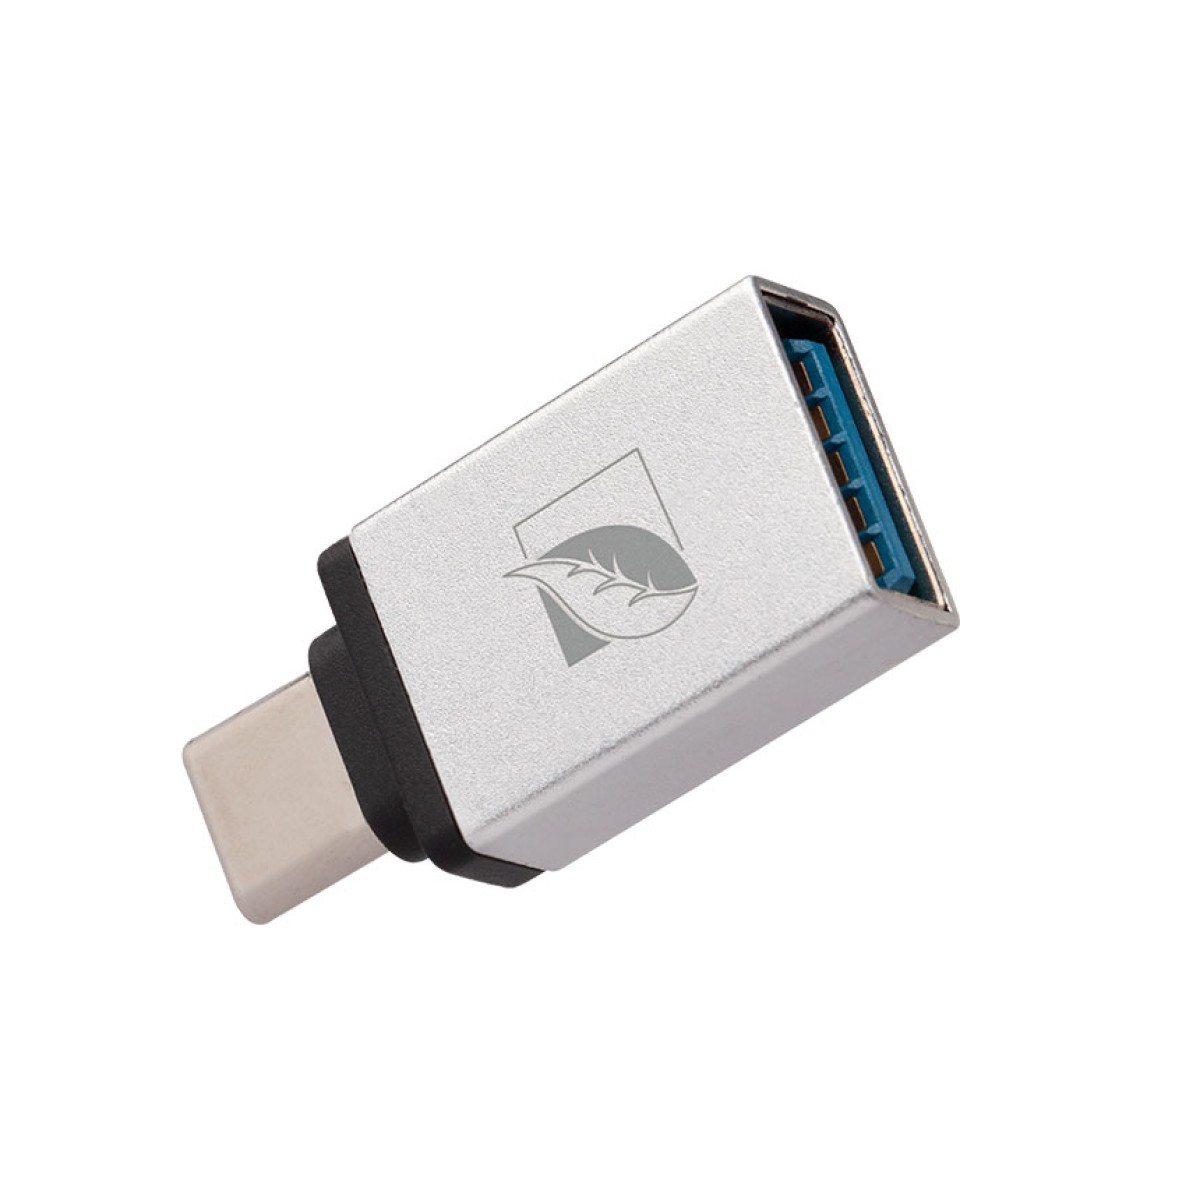 Tecnologías William - El adaptador OTG USB te permite conectar memorias  USB, o bien, dispositivos como: mouse, teclado, etc. a tu celular o Tablet,  así como a laptops. Adaptador OTG Tipo C